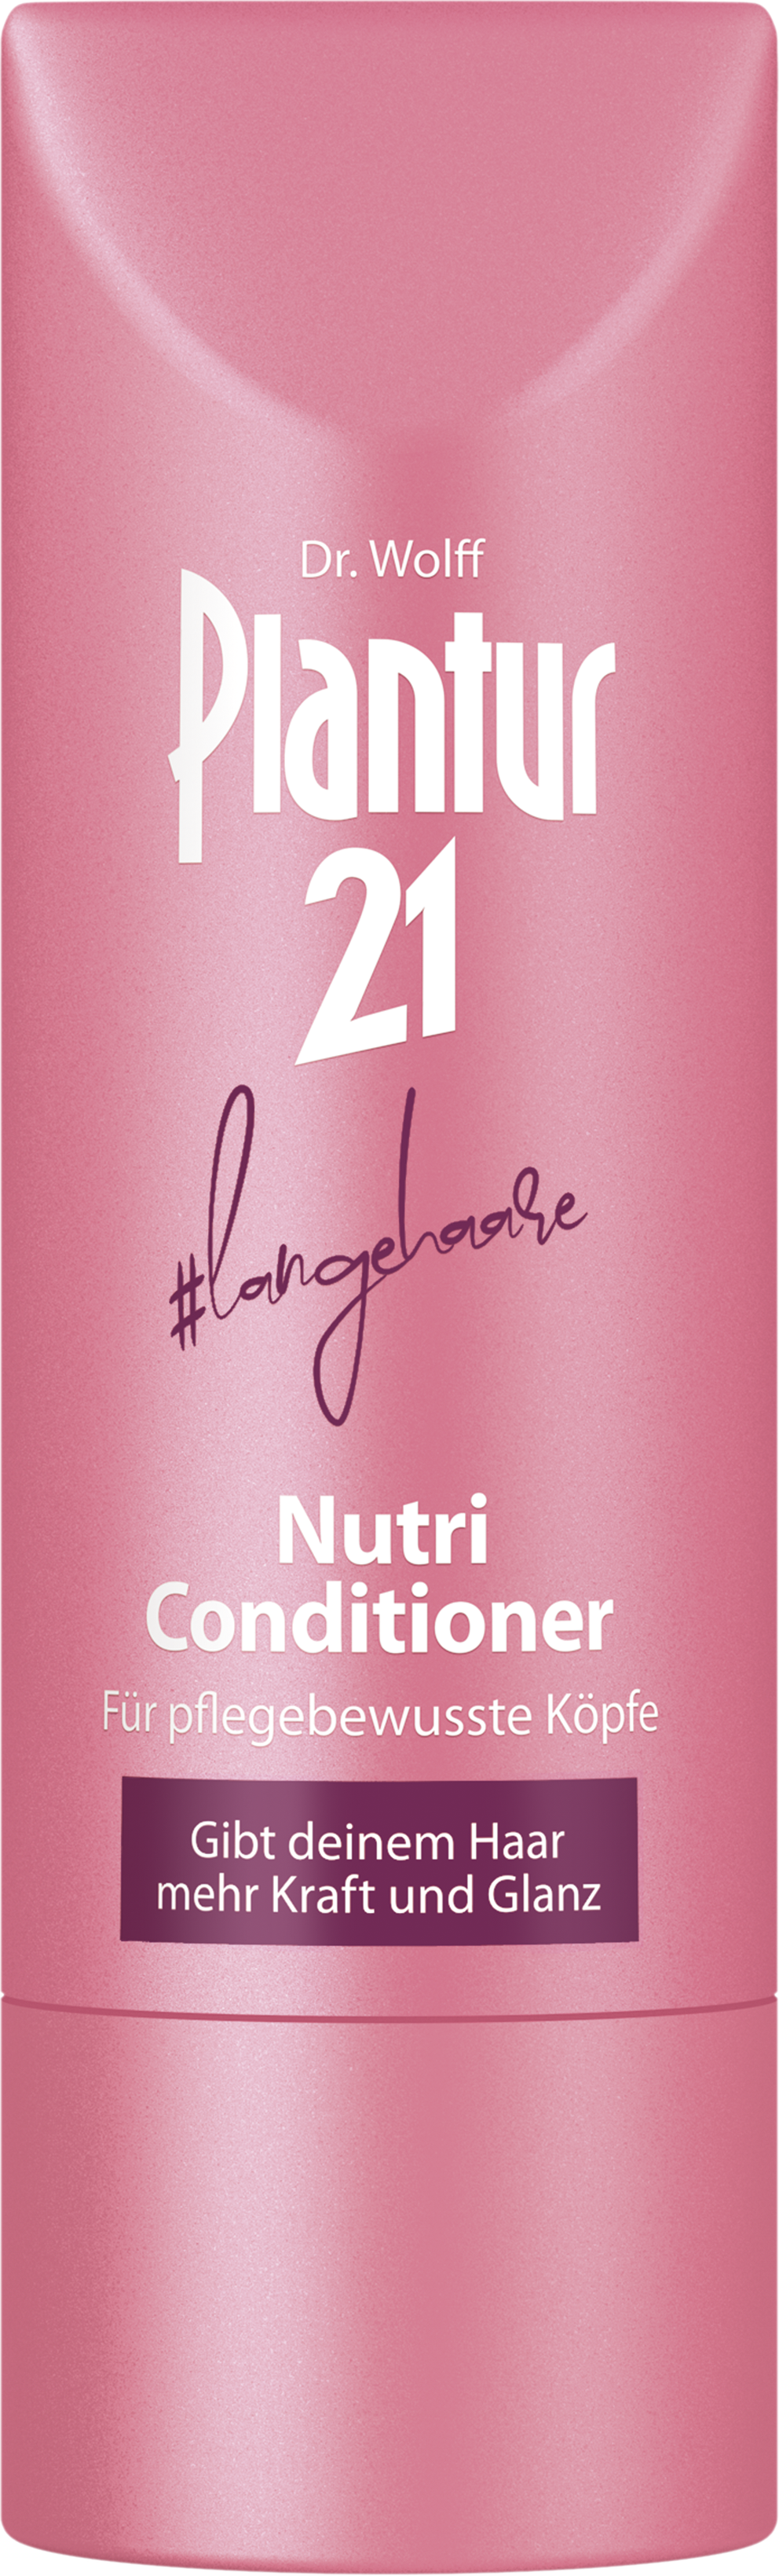 #langehaare Nutri-Conditioner